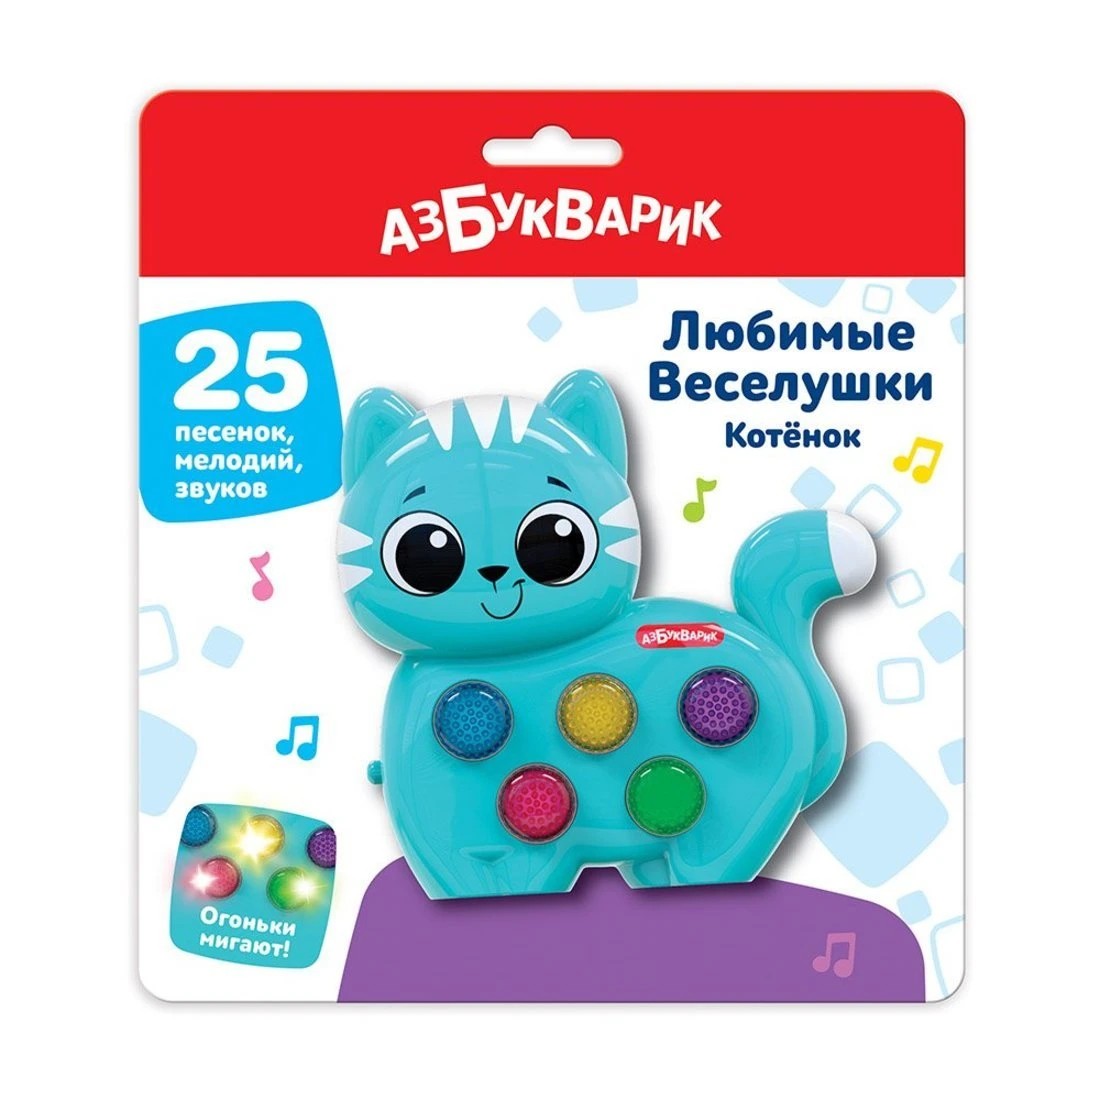 Музыкальная игрушка Котенок Веселушки